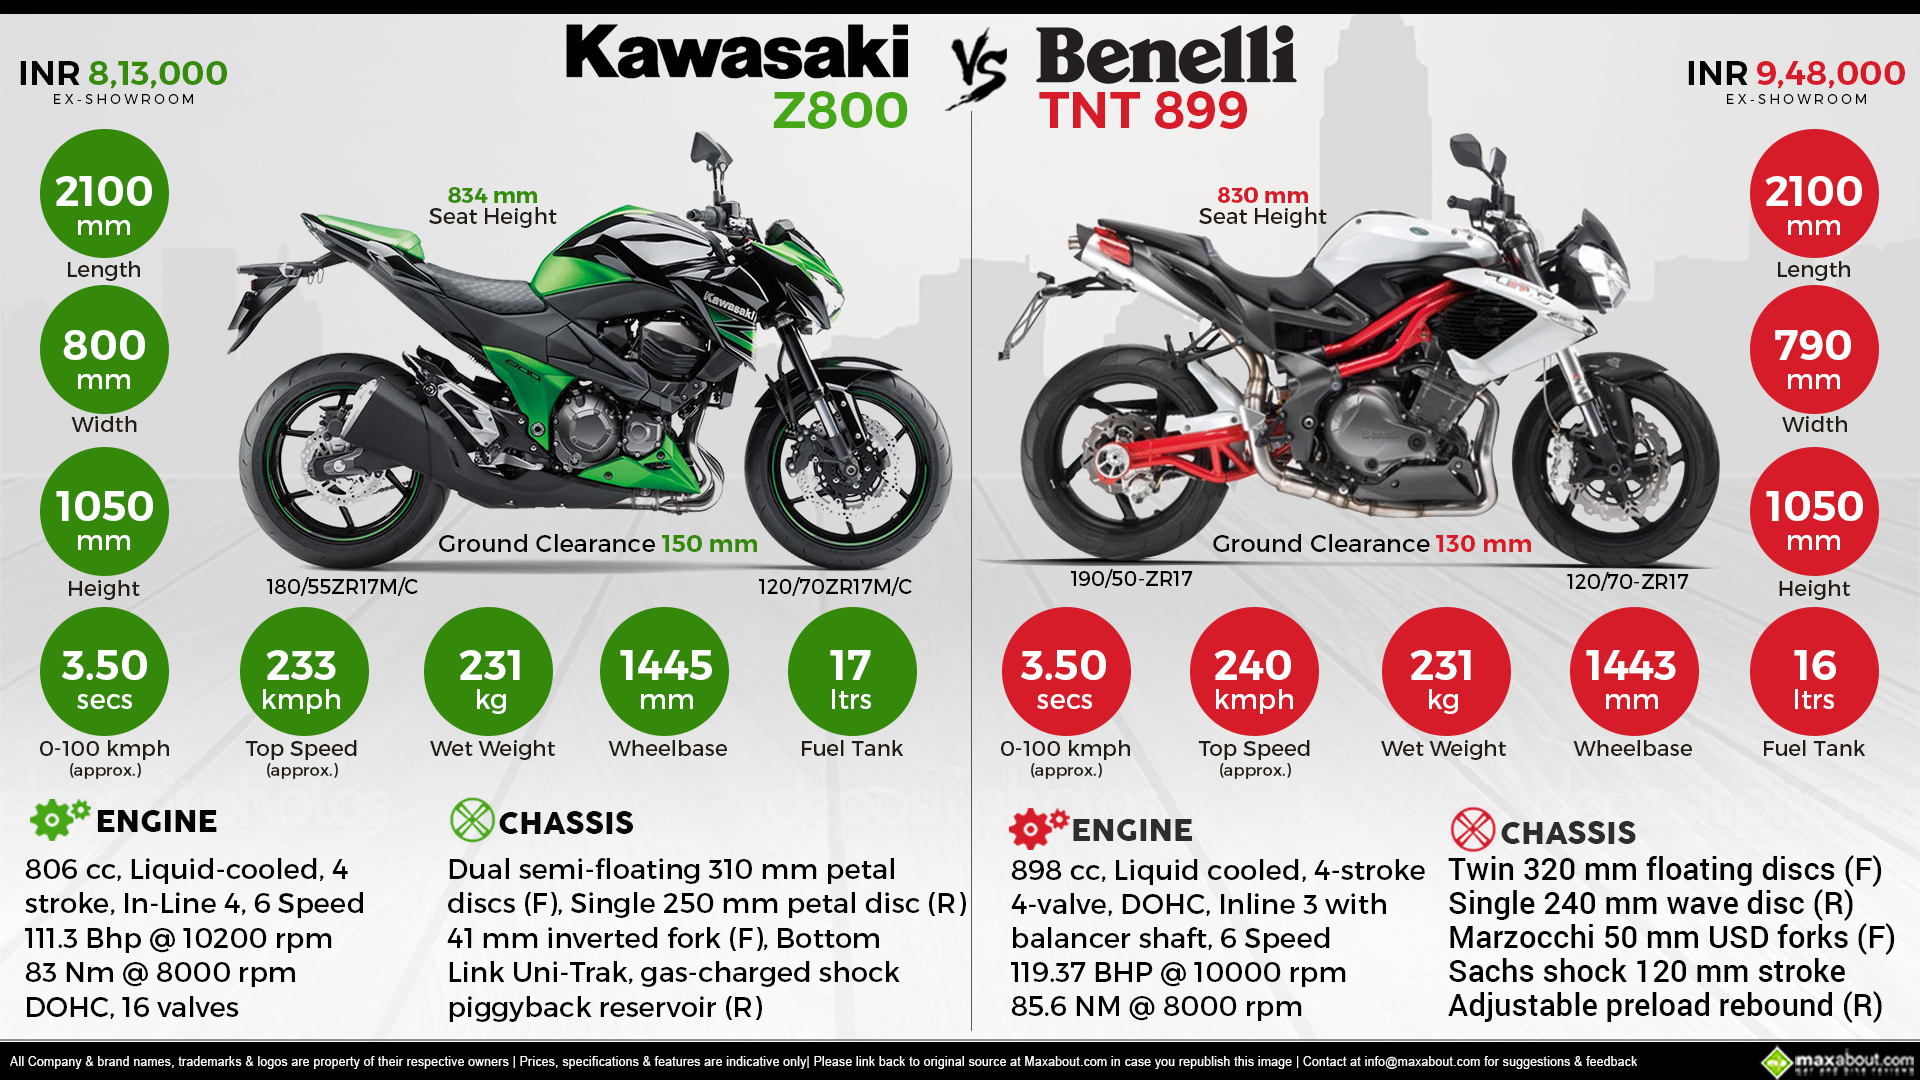 Kawasaki Z800 Benelli TNT 899